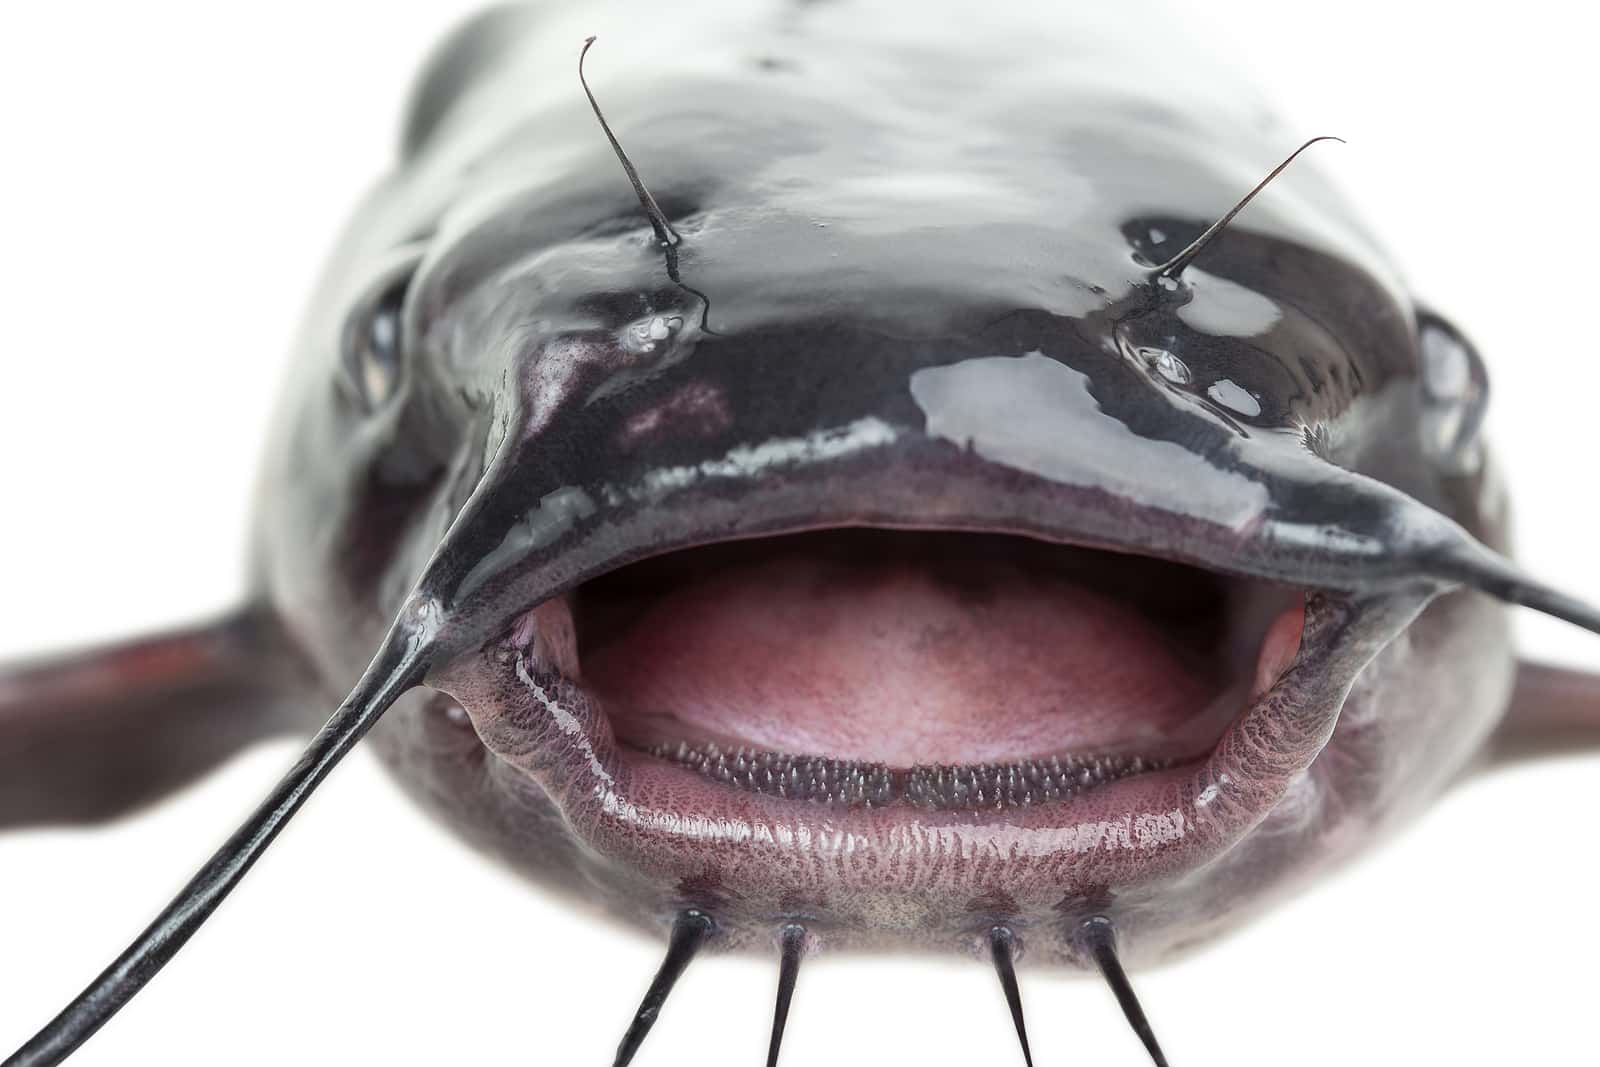 Monstrous Catfish Invading Europe